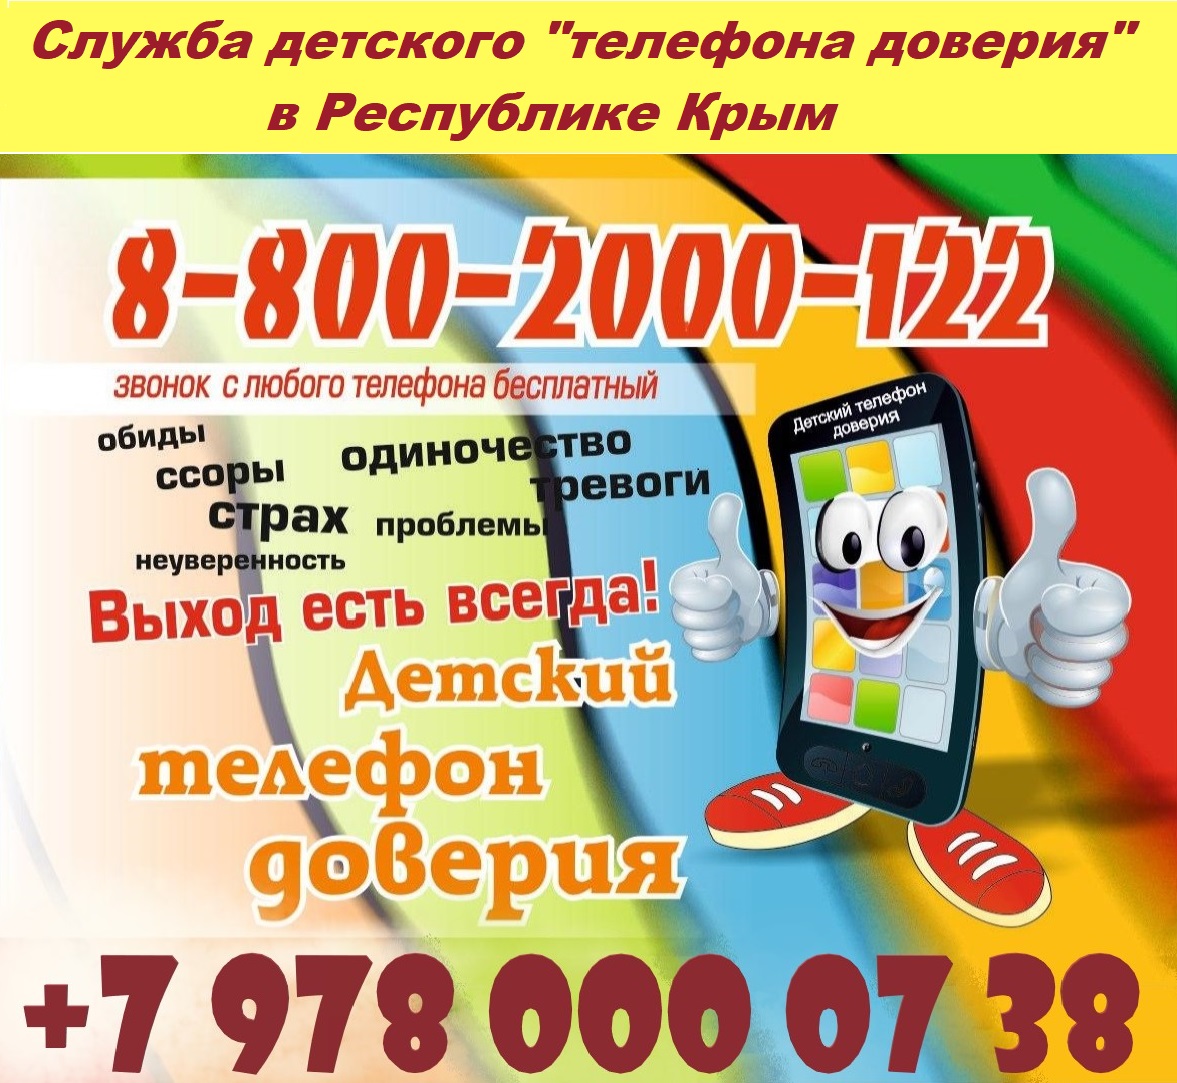 Номер телефона доверия +7978-0000738 88002000112